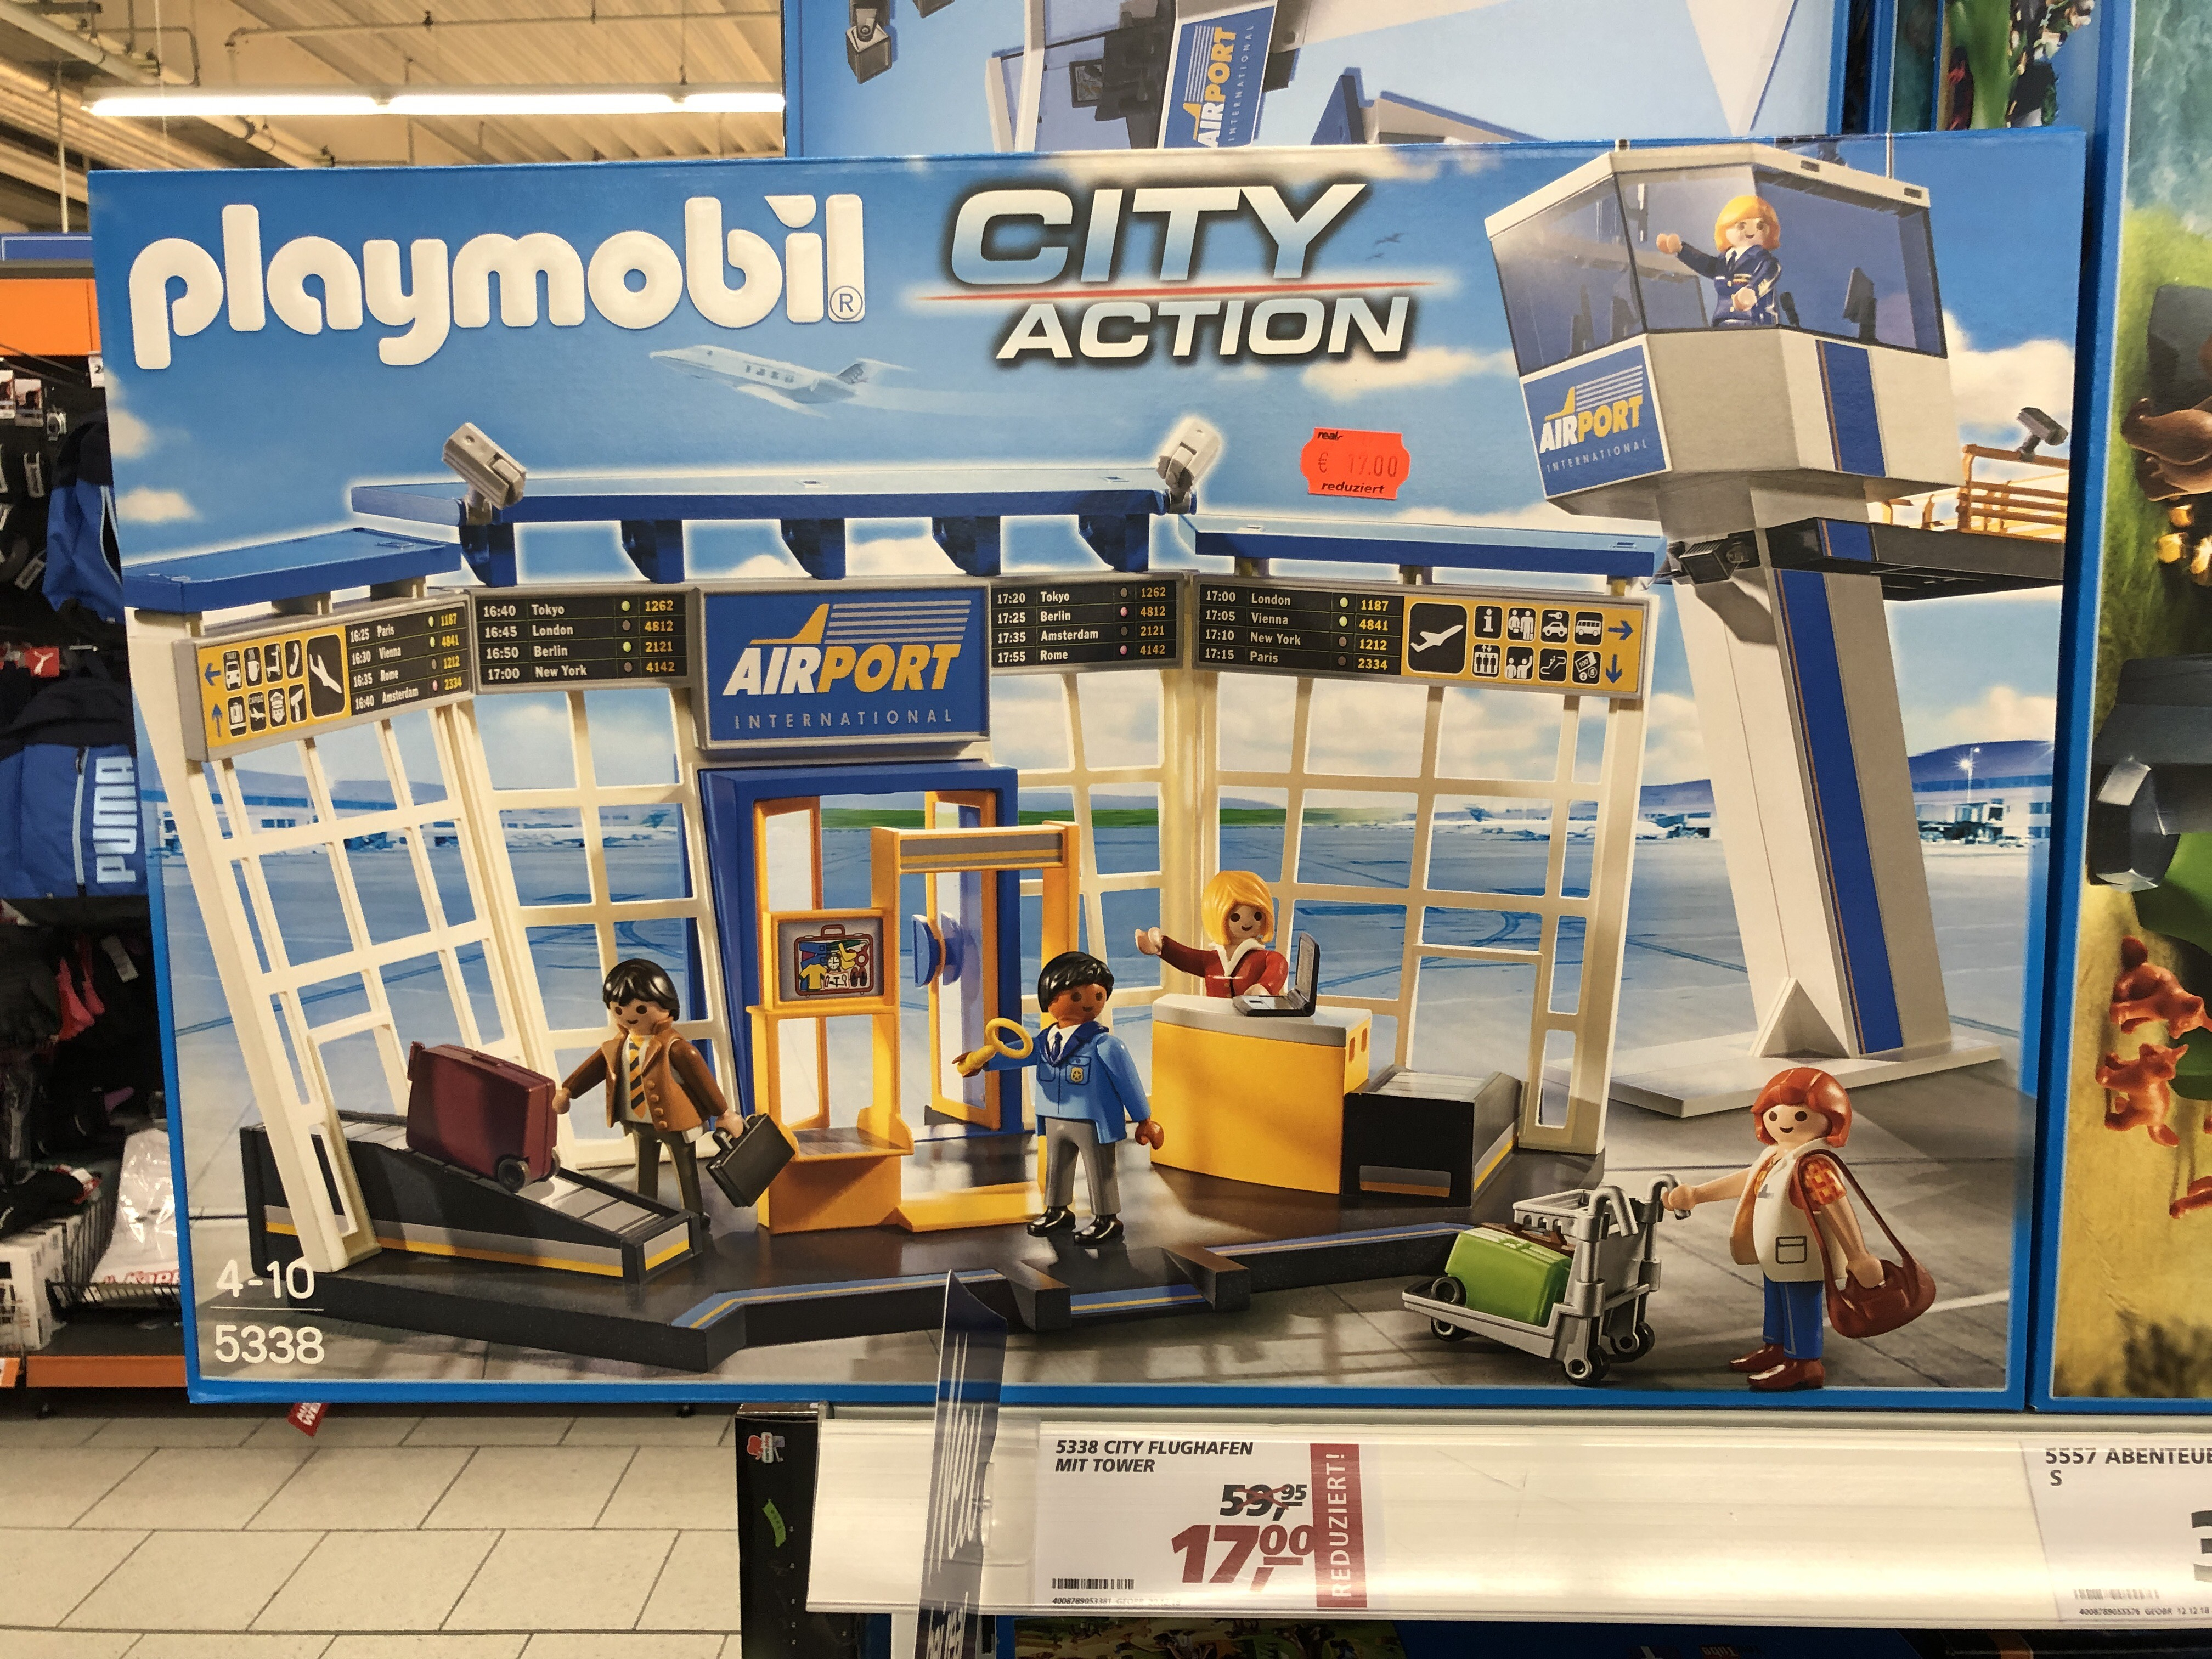 Playmobil City Action Flughafen Mit Tower 5338 Für 17 Statt 29